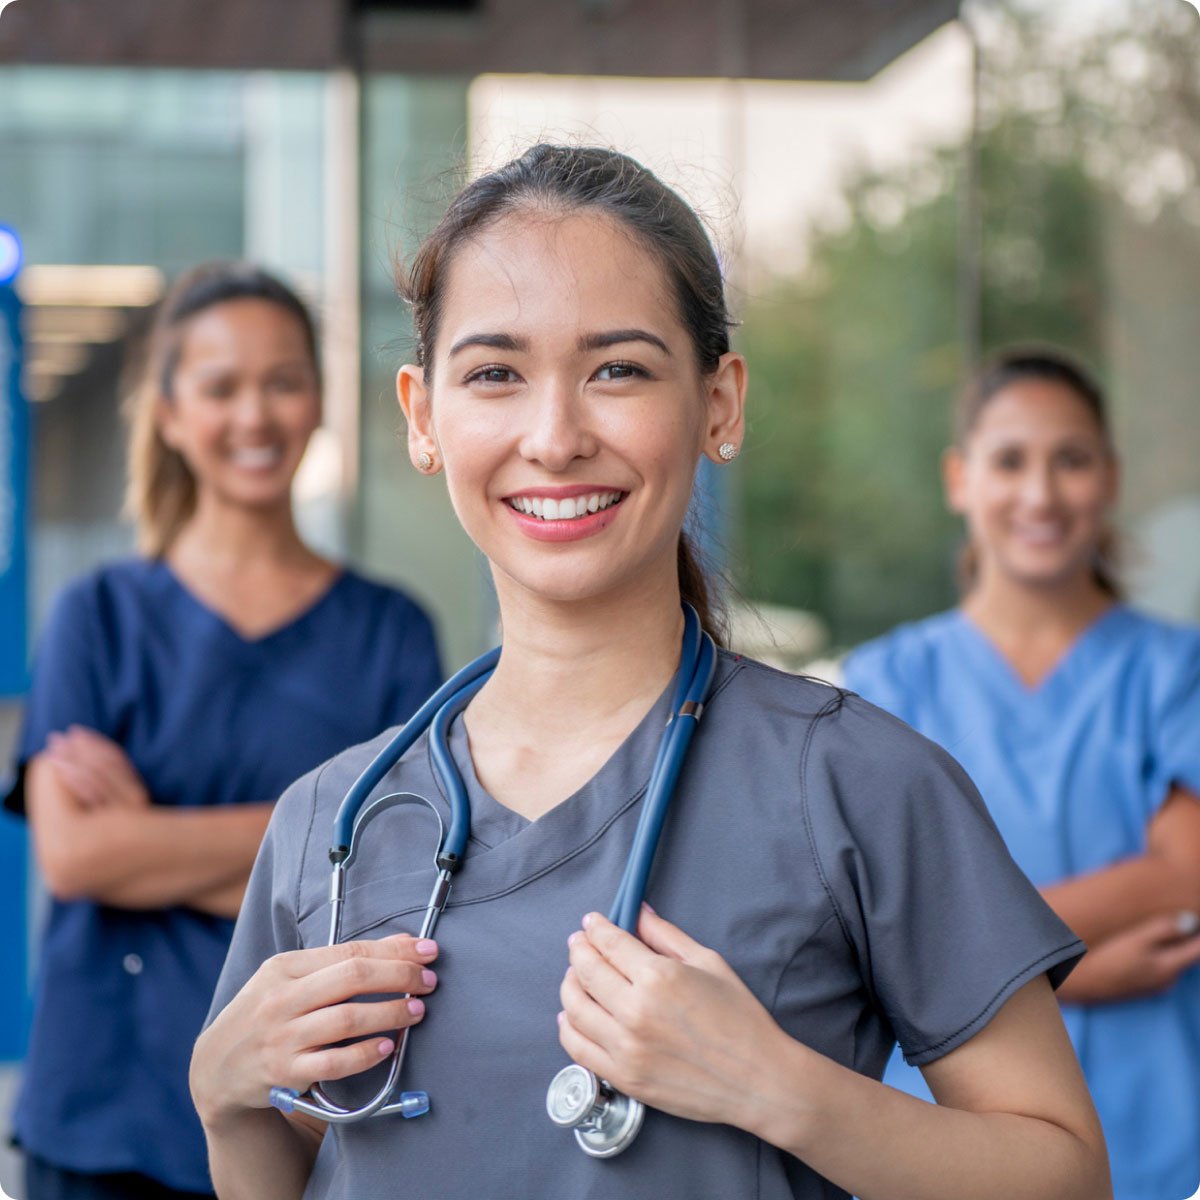 nurses smiling standing together